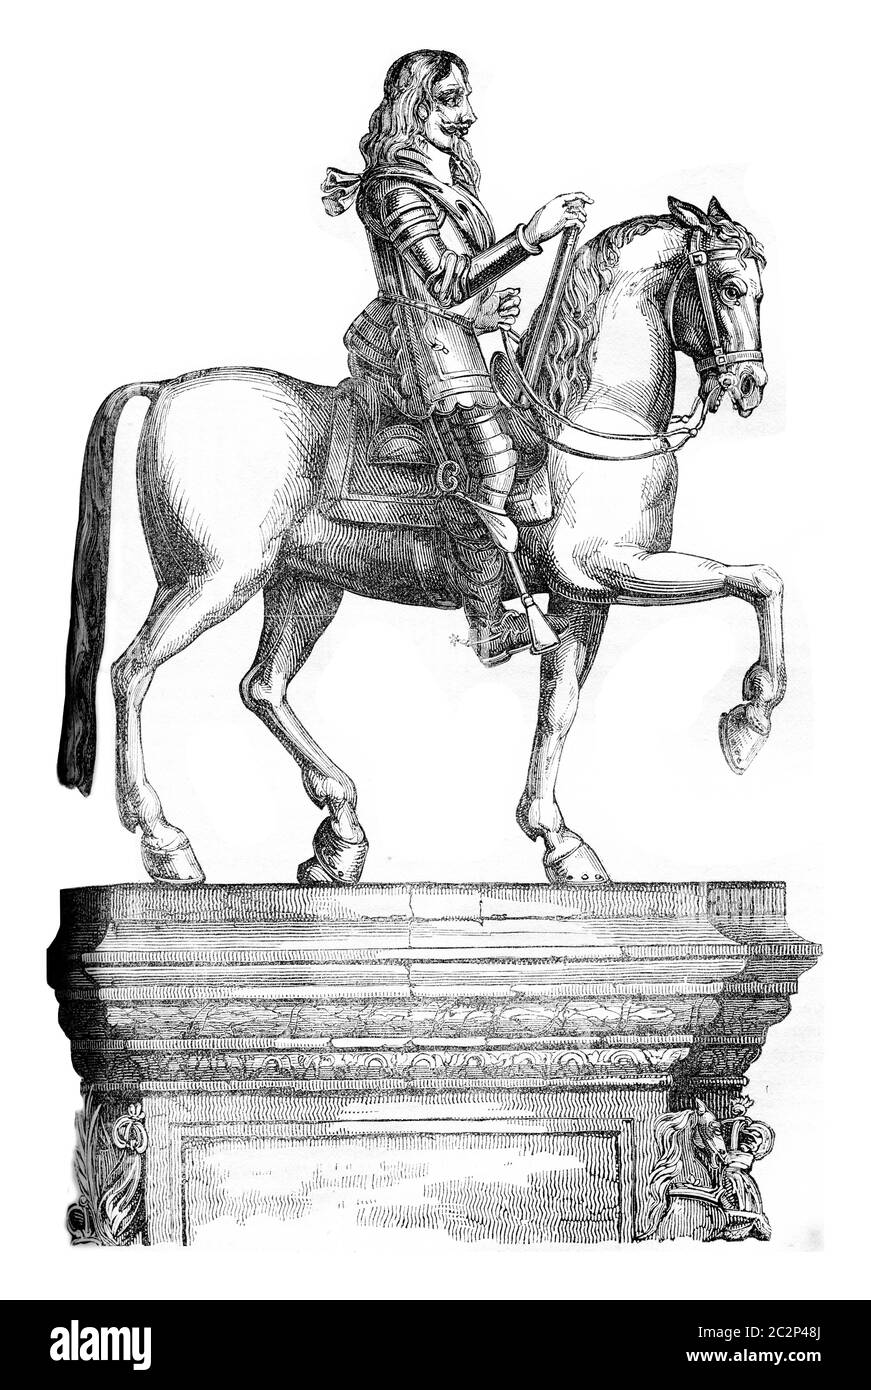 Statue en bronze de Charles I, fondue en 1635, illustration gravée d'époque. Histoire colorée de l'Angleterre, 1837. Banque D'Images